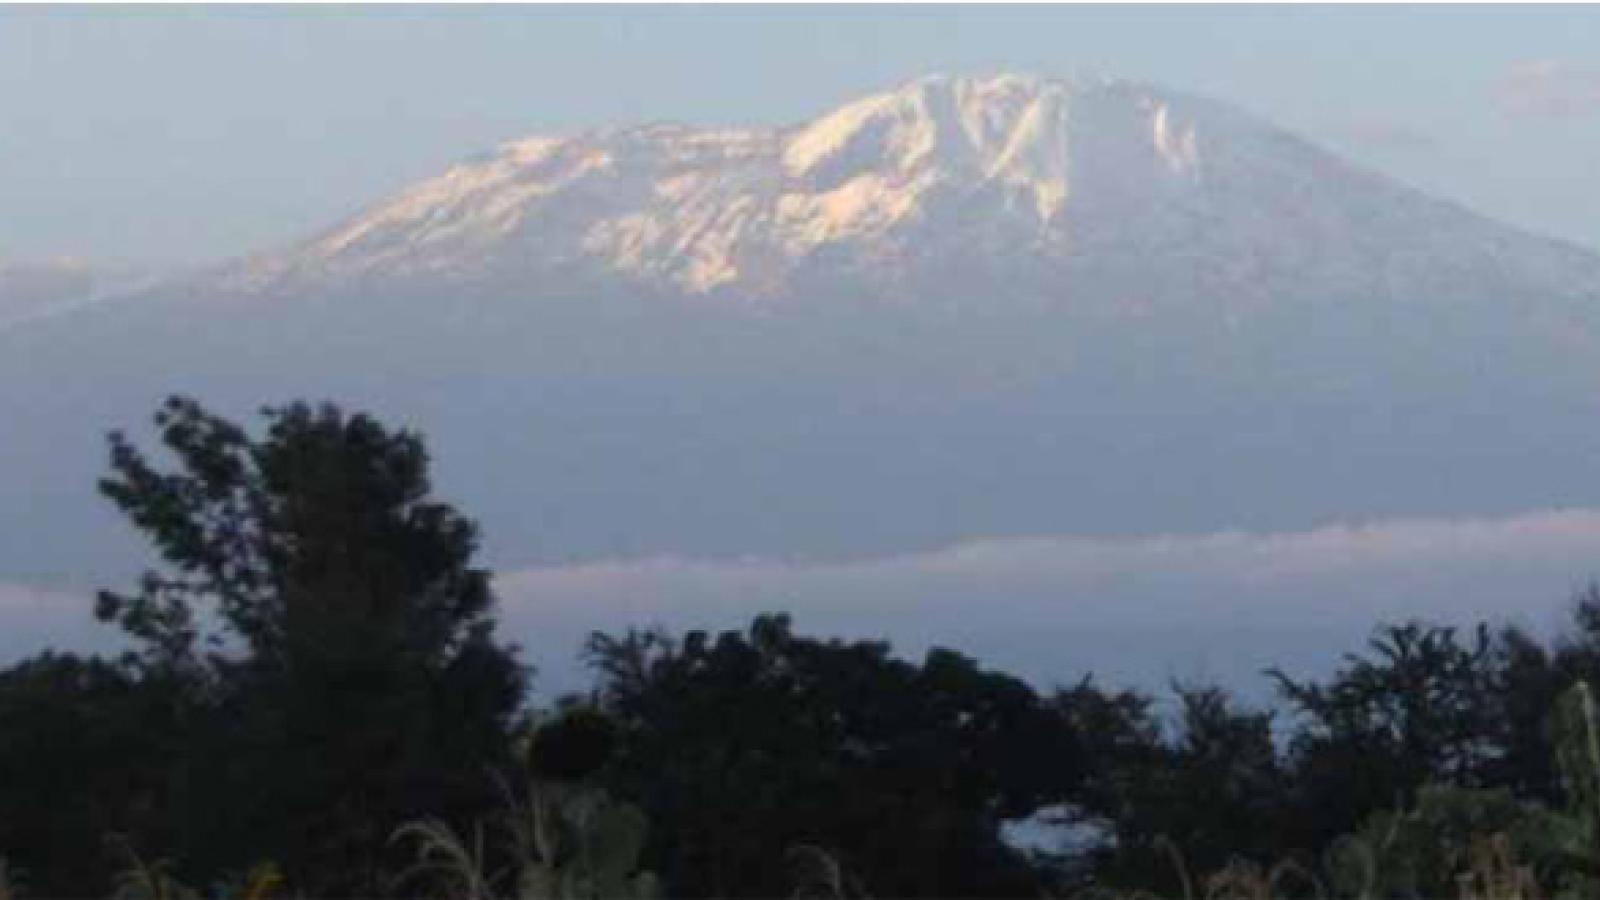 Mount Kilimajaro in Tanzania.